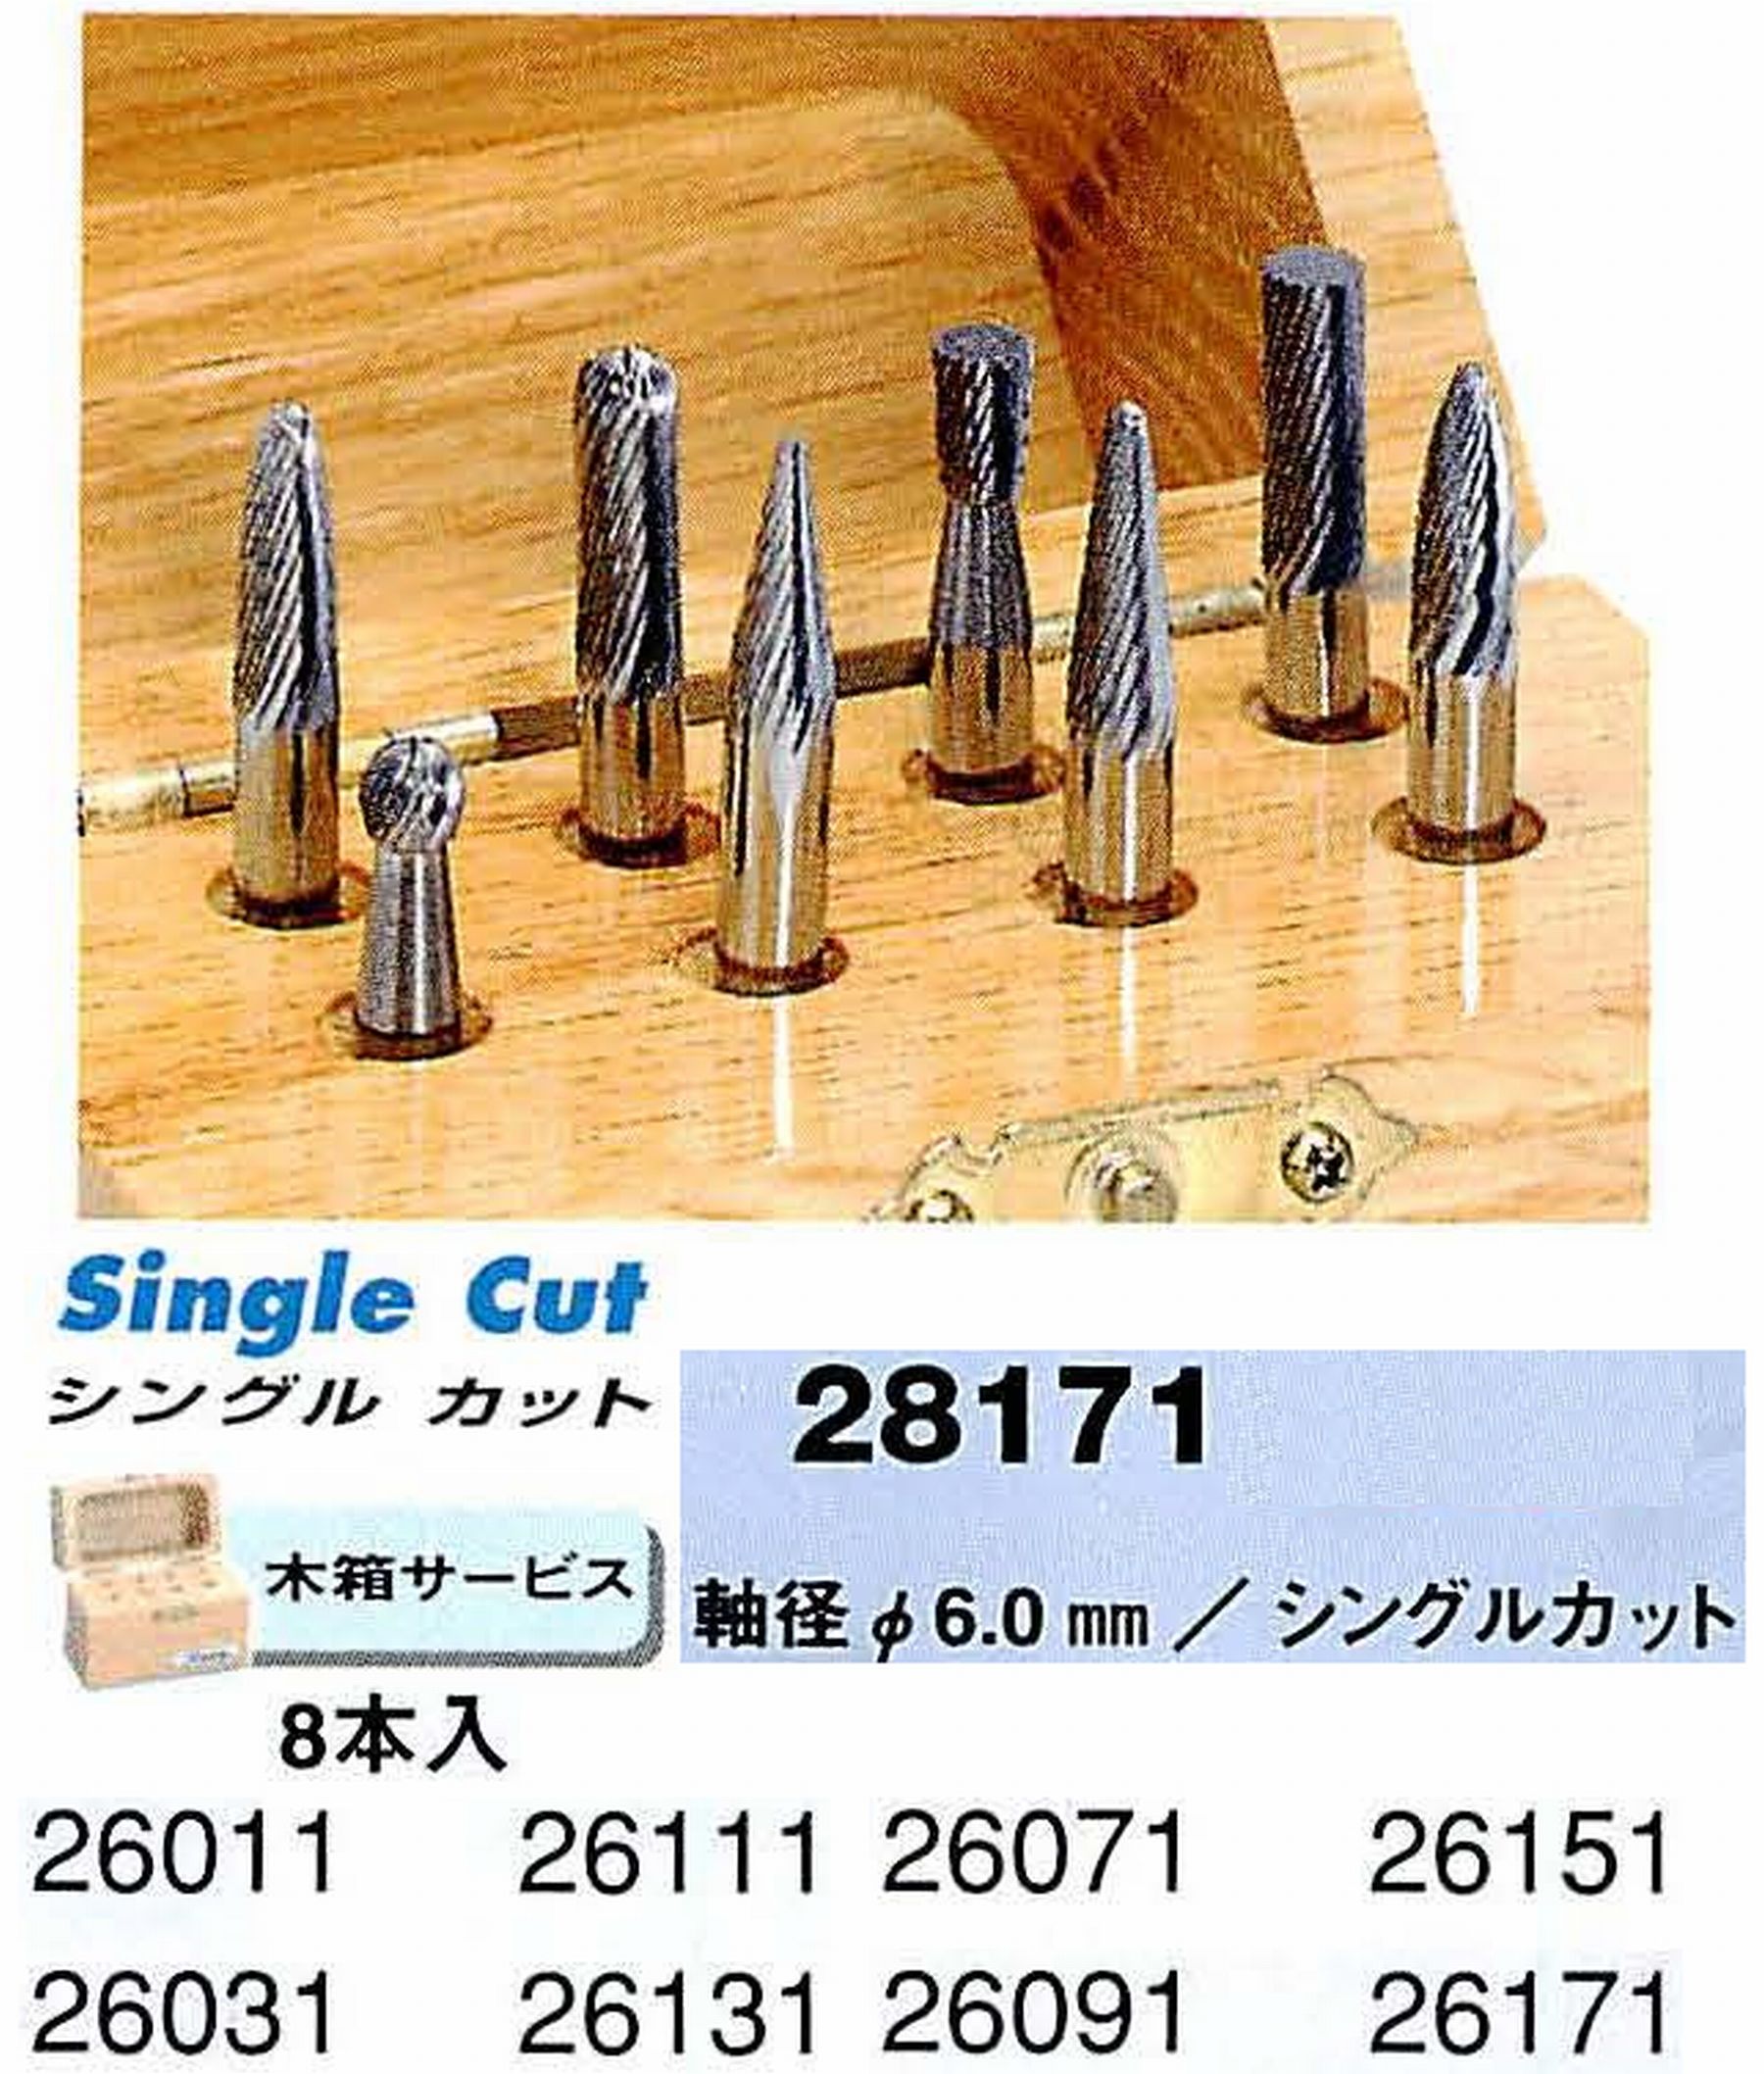 ナカニシ/NAKANISHI 超硬カッター アソートセット 軸径(シャンク)φ6.0mm 28171